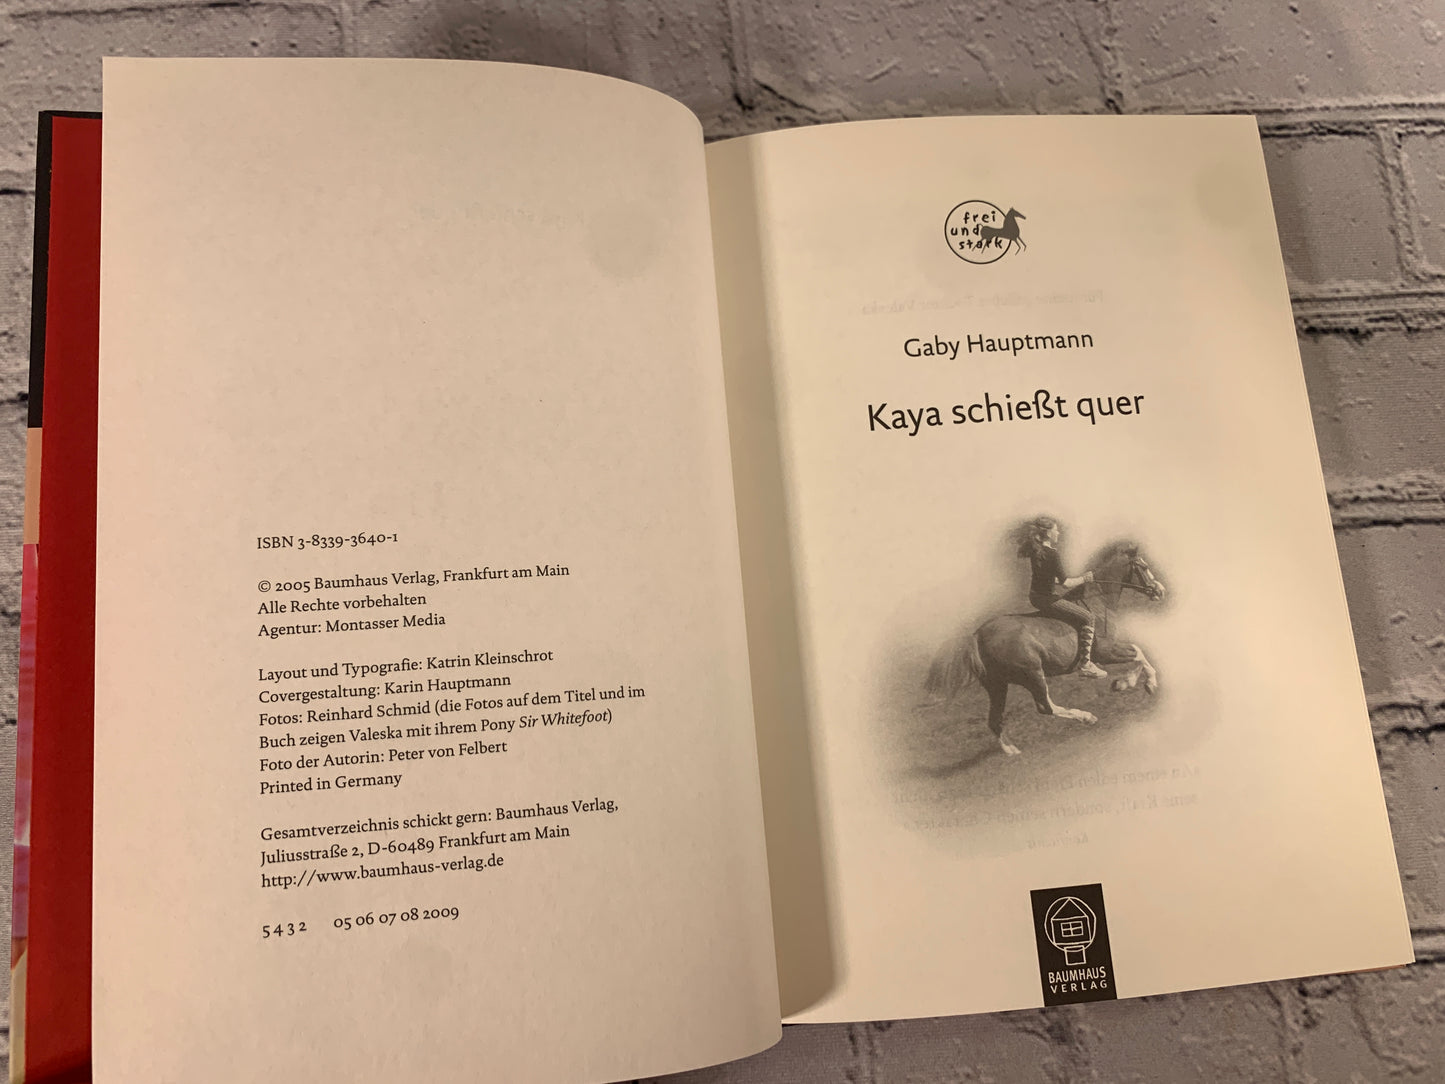 Kaya Schiefst Quer (Kaya Leans Across) by Gaby Hauptmann [2005]